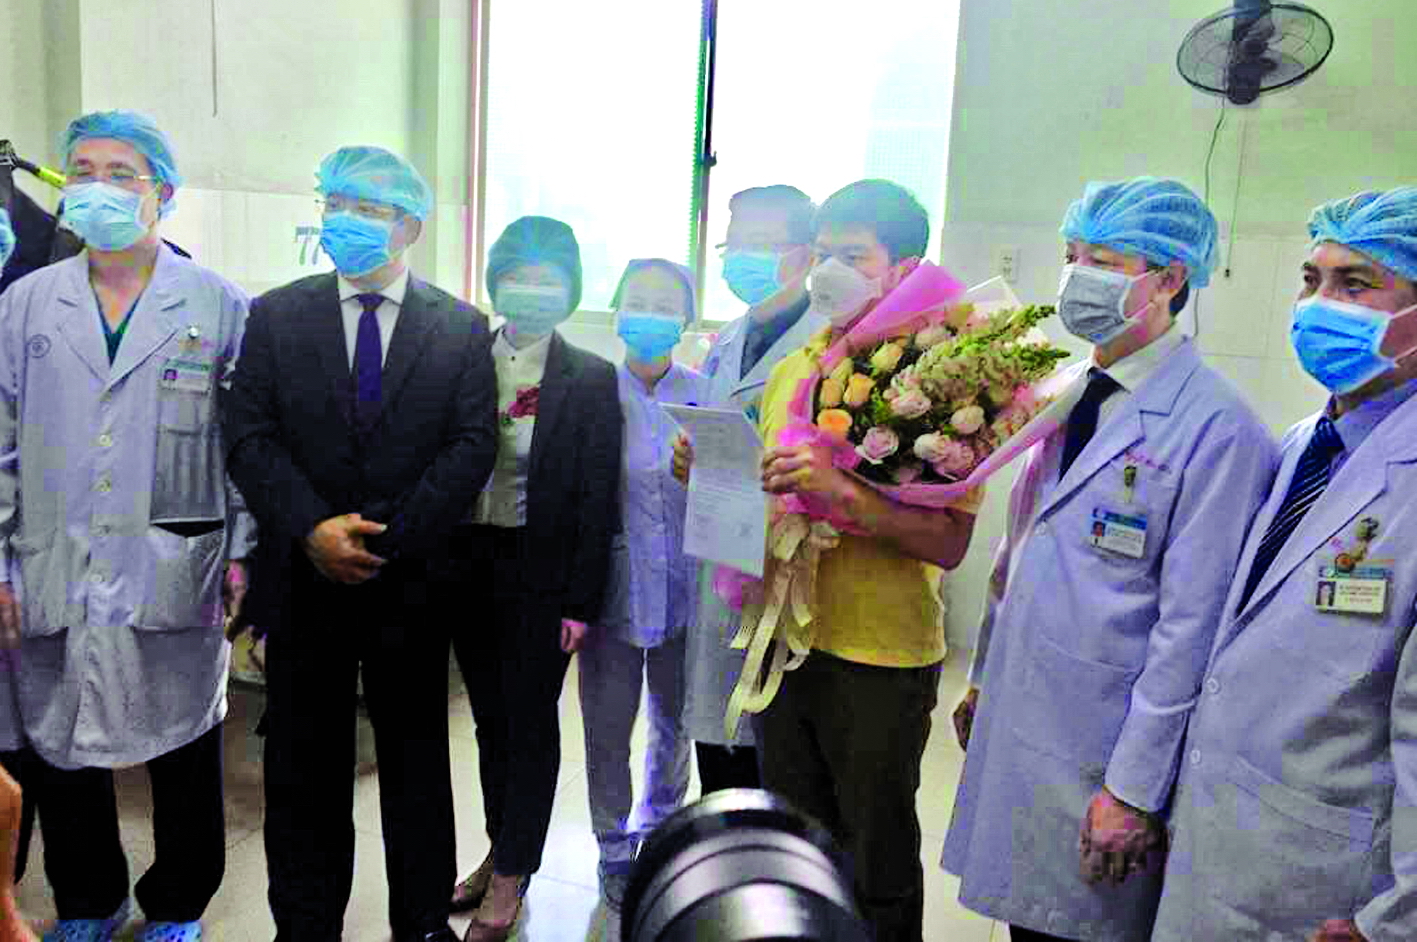 Các y bác sĩ chúc mừng bệnh nhân Trung Quốc đã chữa khỏi bệnh viêm phổi Vũ Hán và được xuất viện tại Bệnh viện Chợ Rẫy ngày 4/2 (bệnh nhân ôm hoa)